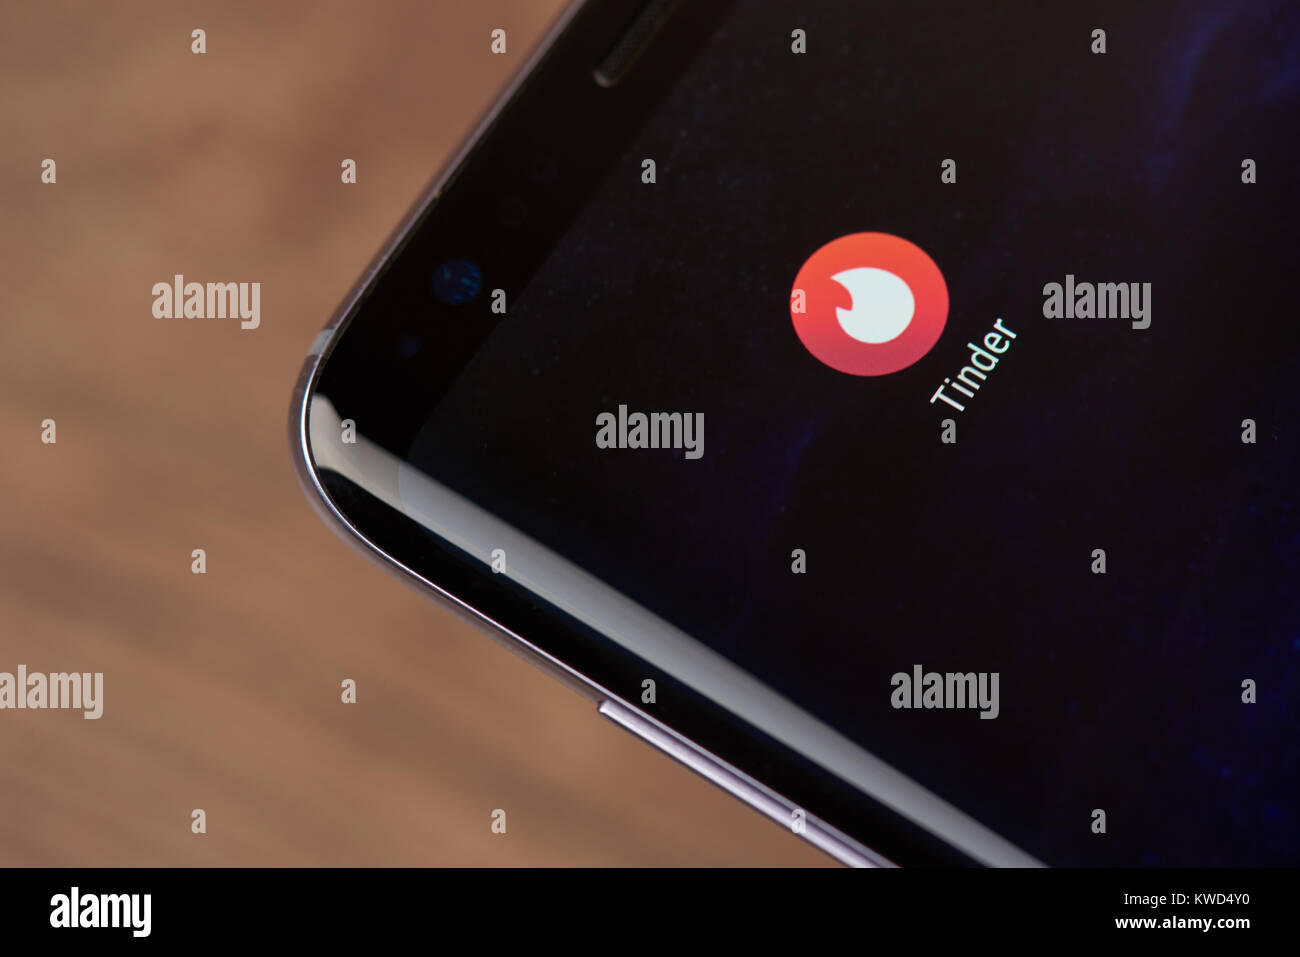 New York, USA - 2 janvier 2018 : Amadou médias sociaux icône sur l'écran du smartphone close-up. L'Amadou icône de l'application de médias sociaux avec copie espace sur Banque D'Images